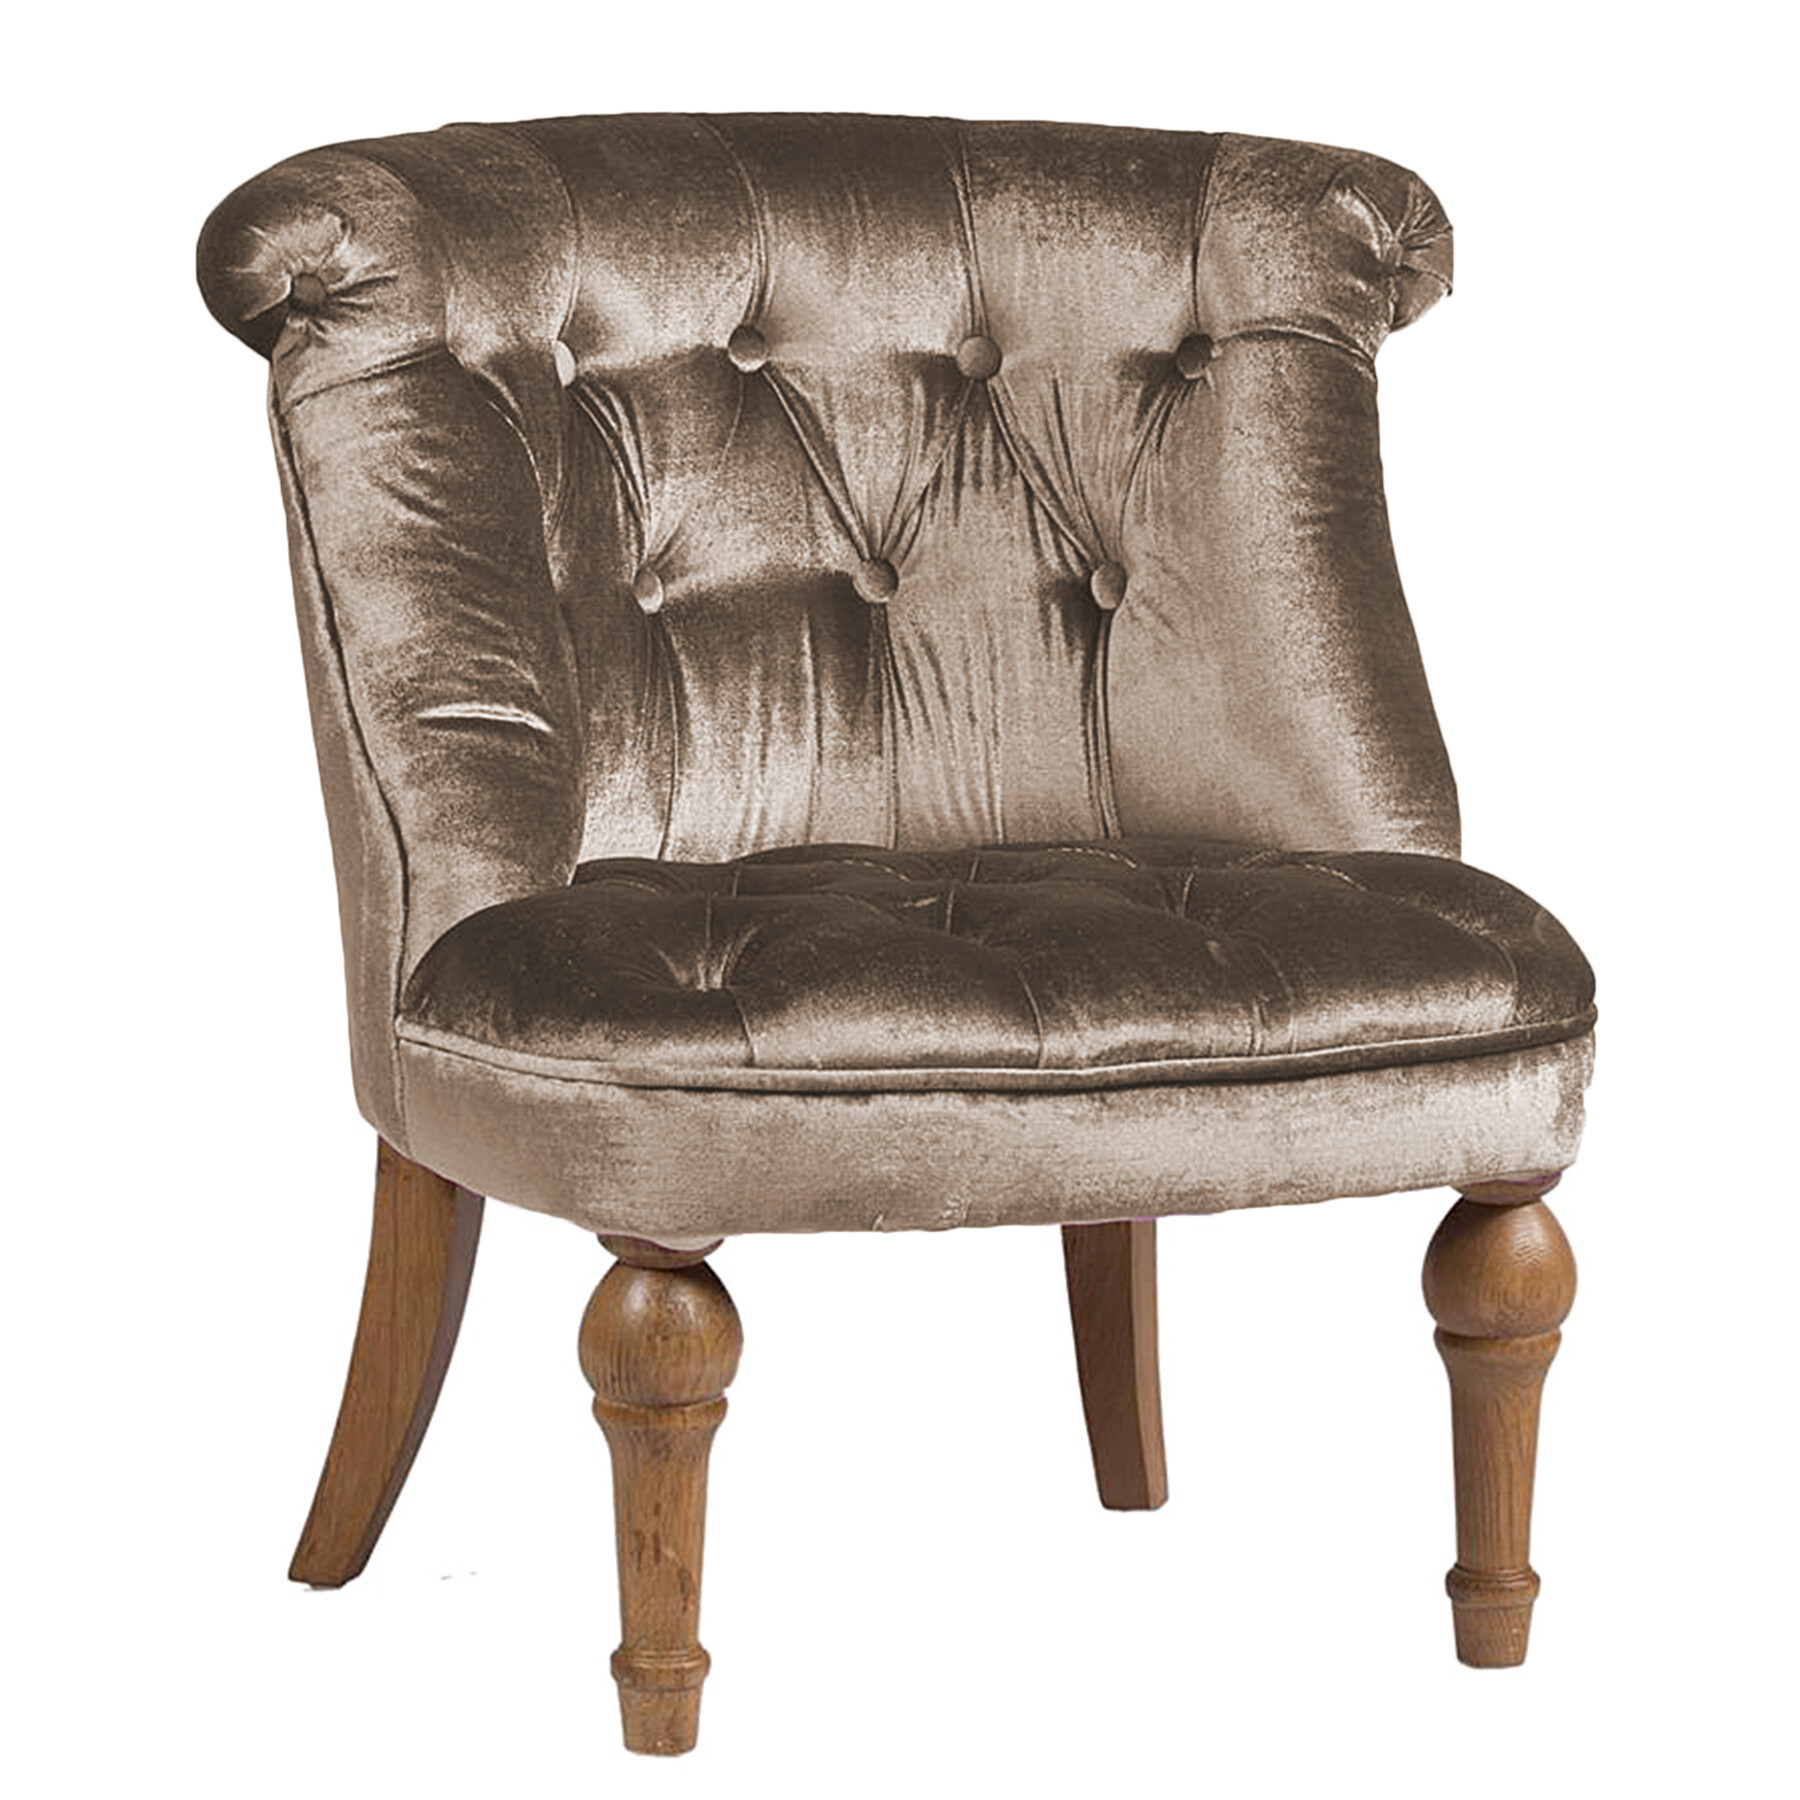 Кресло мягкое с фигурными ножками серо-коричневое Sophie Tufted Slipper Chair